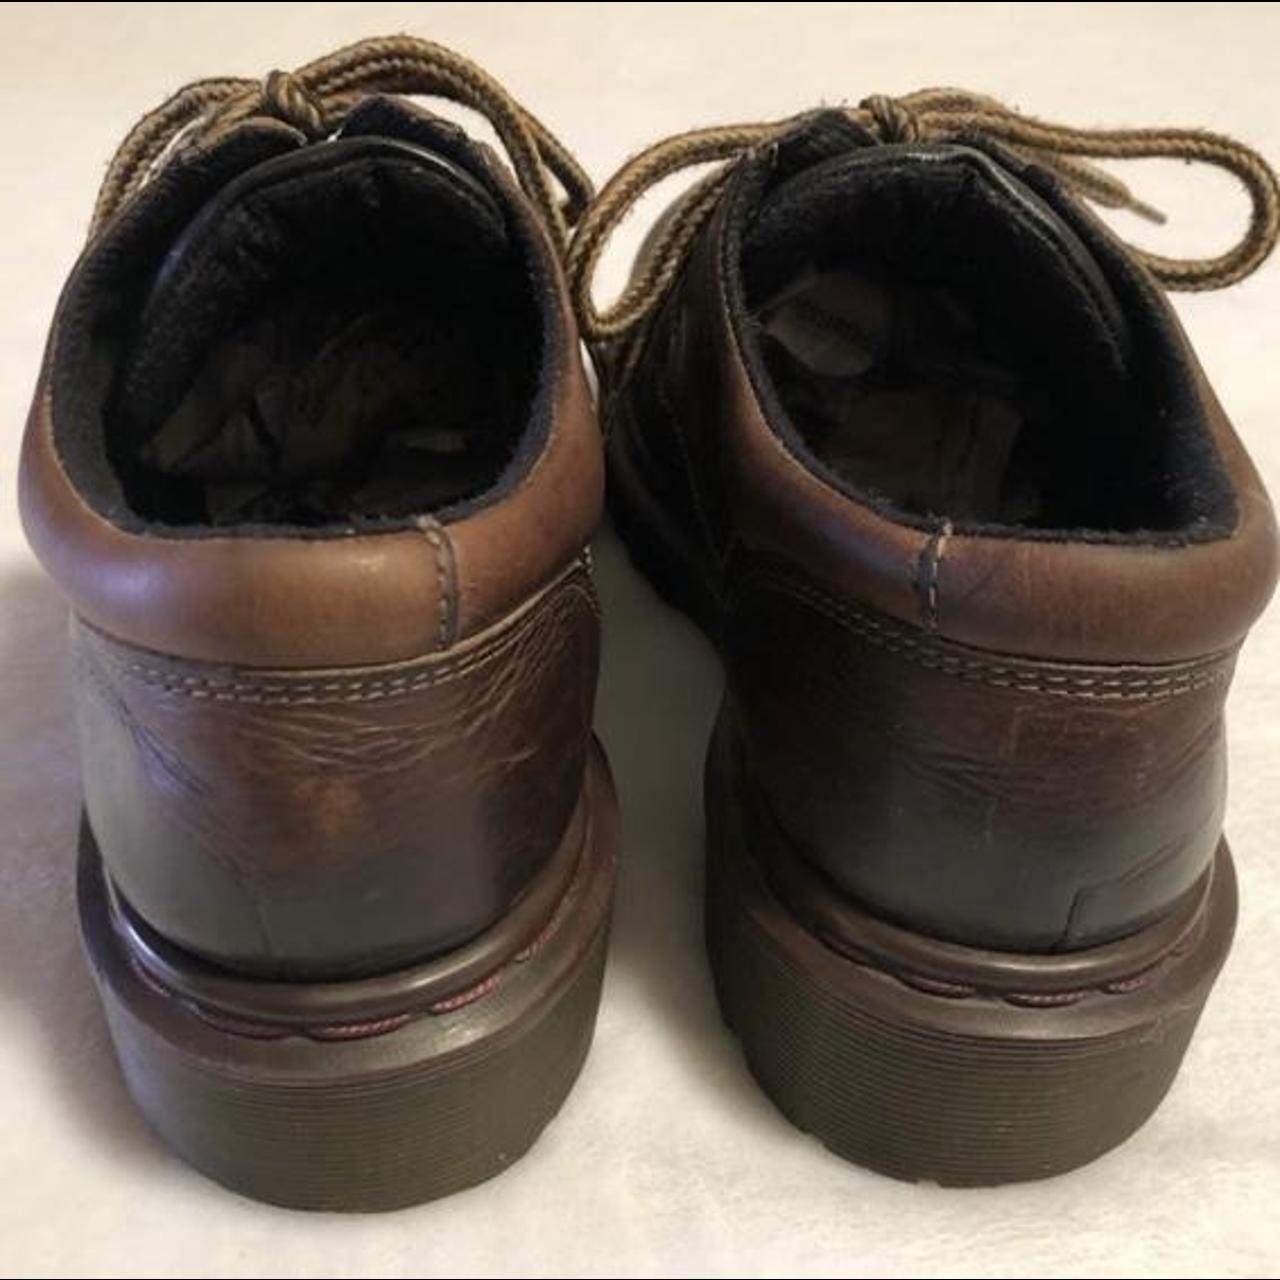 Vintage UK size 8 Dr. Martens 8457 in brown leather.... - Depop